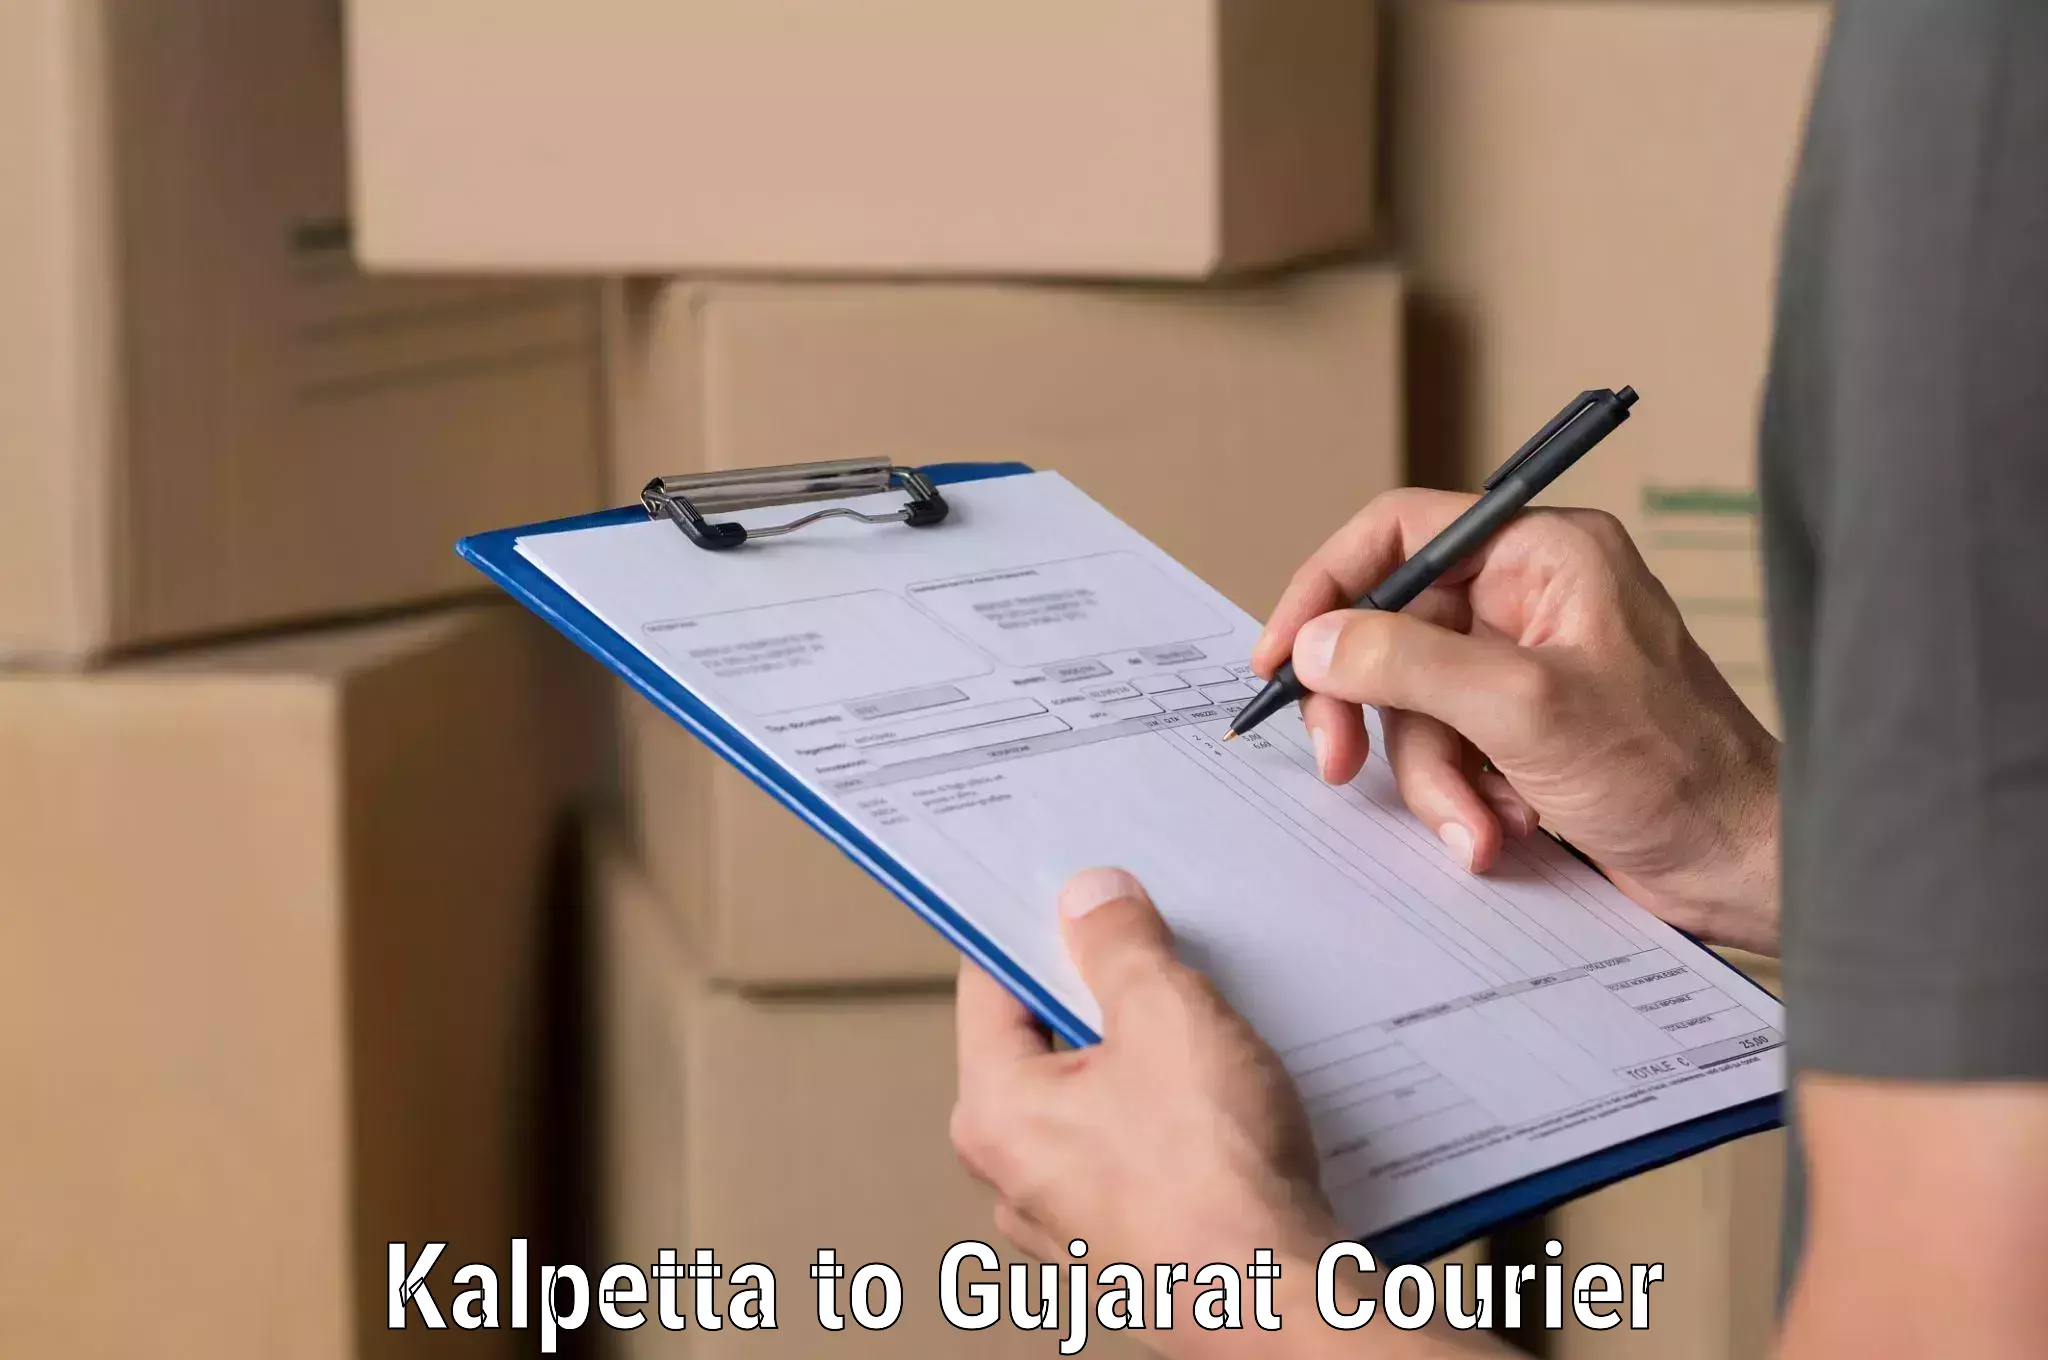 Efficient freight service Kalpetta to Dwarka